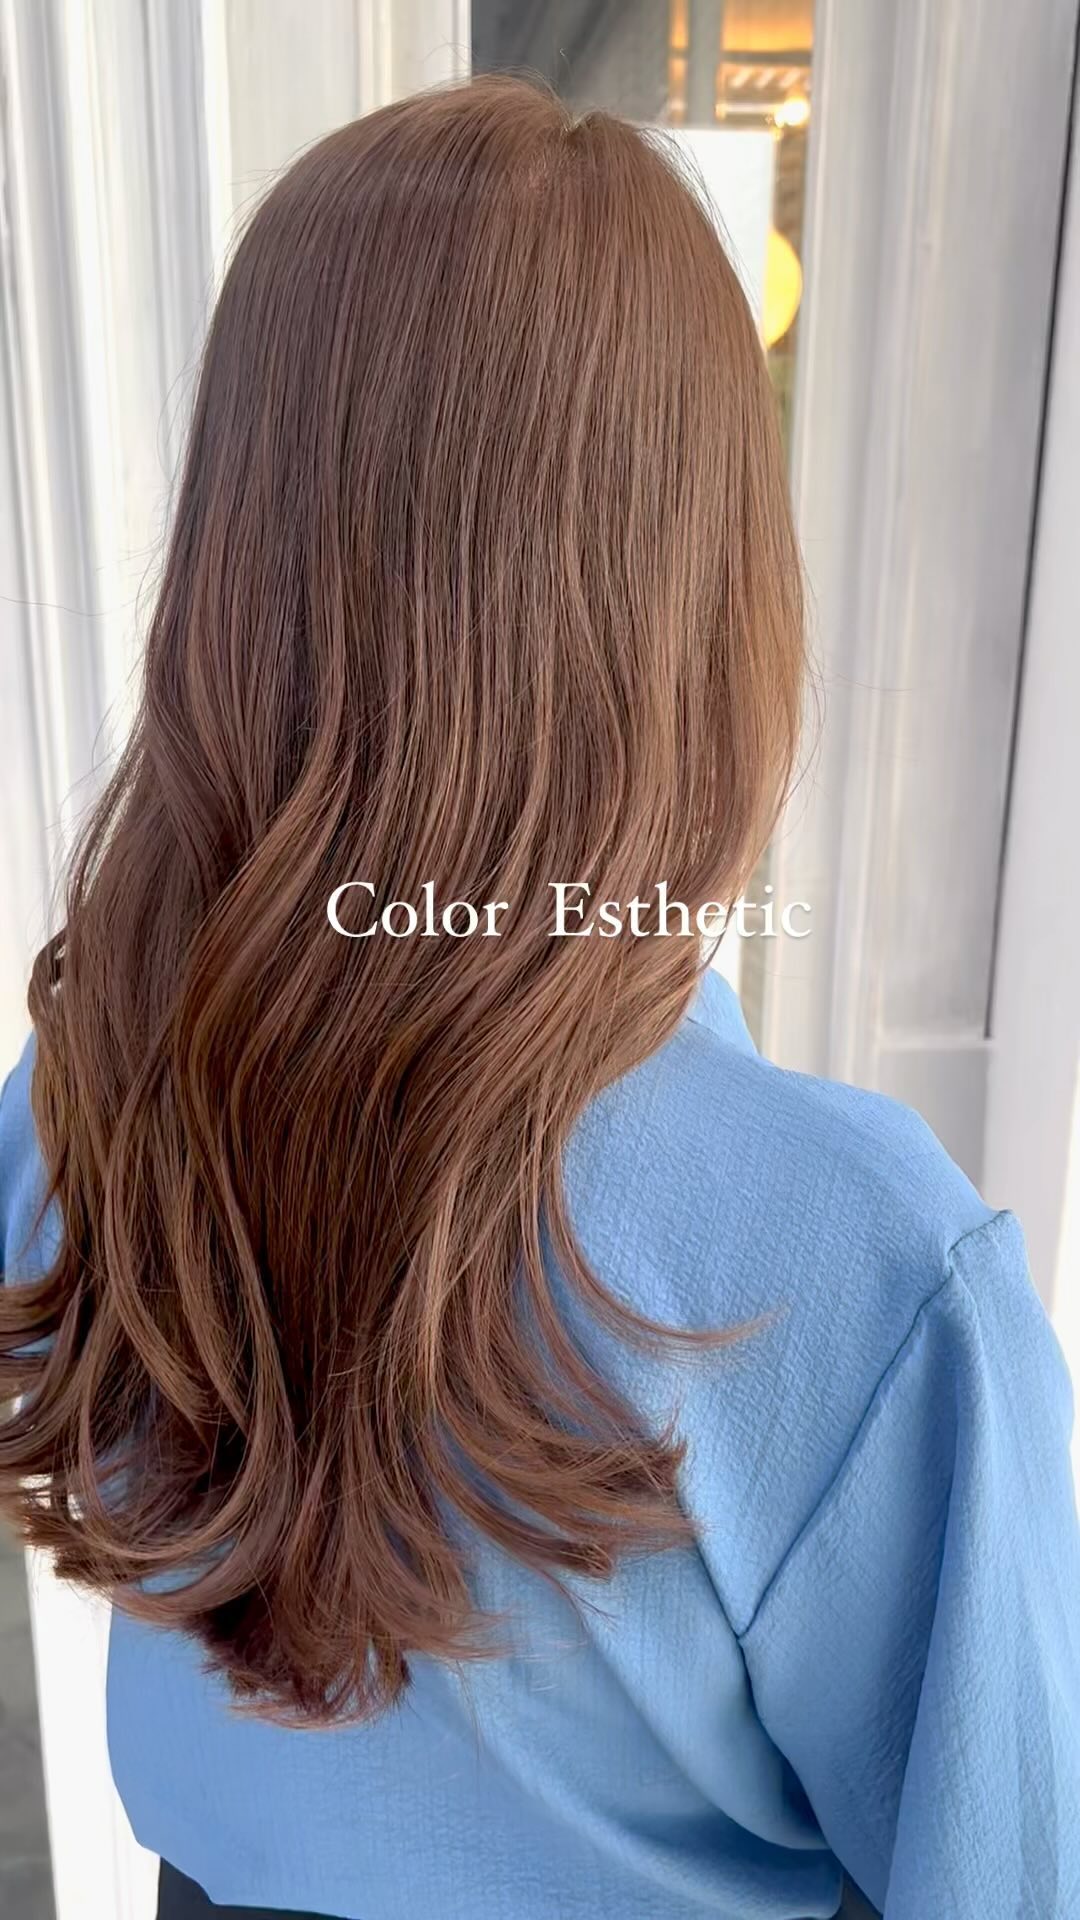 Color Esthetic  ถึงแม้จะเป็นรายการเกี่ยวกับการทำสีผม แต่ก็สามารถทำให้เส้นผมมีสุขภาพที่ดีขึ้นได้🤫  เมนูCuu's hair เป็นเมนูยอดนิยม จำเป็นต้องจำกัดสิทธิ์ในการจองคิว แนะนำให้ทุกท่านรีบติดต่อทางเราเพื่อสำรองคิวไว้ล่วงหน้า
สำหรับเมนูนี้เป็นการทำสีพร้อมกับการดูแลเส้นผมด้วยการเติมสารอาหารจำนวนมาก เช่น เคราติน คอลลาเจน กรดอะมิโน กรดไฮยาลูโรนิก เซราไมด์ ฯลฯ 
ไม่ว่าจะเป็นพื้นผมธรรมดา หรือพื้นผมที่ผ่านการฟอก ผมจะดูเงางามขึ้น เนื่องจากเส้นผมได้รับการบำรุงดูแลจากภายใน ไม่ว่าจะมีสภาพเส้นผมอย่างไรผมจะดีขึ้นได้อย่างแน่นอน  แนะนำ!! เหมาะสำหรับผู้ที่ต้องการทำสีผมแต่ไม่ต้องการให้เส้นผมหรือหนังศรีษะถูกทำลายหรือได้รับความเสียหาย   อยากให้ทุกท่านได้สัมผัสกับเมนูทำผมอย่างเต็มรูปแบบที่สัมผัสได้ที่ CUU’s hair ที่เดียวเท่านั้น ‍♀️  Color Esthetic
7300 บาท → 5600 บาท
ตัด ,ทำสี ,ให้คำปรึกษา, ดีท็อกซ์หนังศีรษะ,สระผม, แชมพู ,ทรีทเม้นท์, เซ็ท, เป่า,การรับประกัน (ฟรี) ปรึกษาทางไลน์ (ฟรี) + ตัดหน้าม้าหลังทำ 3 สัปดาห์  ระยะเวลาที่ใช้ : ประมาณ 3 ชั่วโมง  カラーエステは…  ヘアカラーメニューなのに髪の毛が良くなります🤫  クーズヘアの人気メニュー、予約に制限を設けているのでご予約はお早めに！
ケラチン、コラーゲン、アミノ酸、スーパーヒアルロン酸、セラミドなどなどここでは伝えきれない程の栄養をたくさん入れながらカラーの施術しています。普通の髪はもちろん、ブリーチ毛でも、とても艶が出て、髪の内部から栄養補給されてどんな髪でも本来の状態が必ず良くなります！
カラーしたいけど、髪や頭皮を傷ませたくない方におすすめです！  クーズヘアのオリジナル、髪エステ是非体験してください‍♀️  IG:cuushair
Facebook : Cuu's​ hair
TEL : 02-065-0909
#bangkok #thonglor #bangkokhairsalon #ผม #เกาหลี #ม้วนผมเกาหลี #ร้านเสริมสวย #ดัดผม #สไตล์เกาหลี #hairesthetic #organic